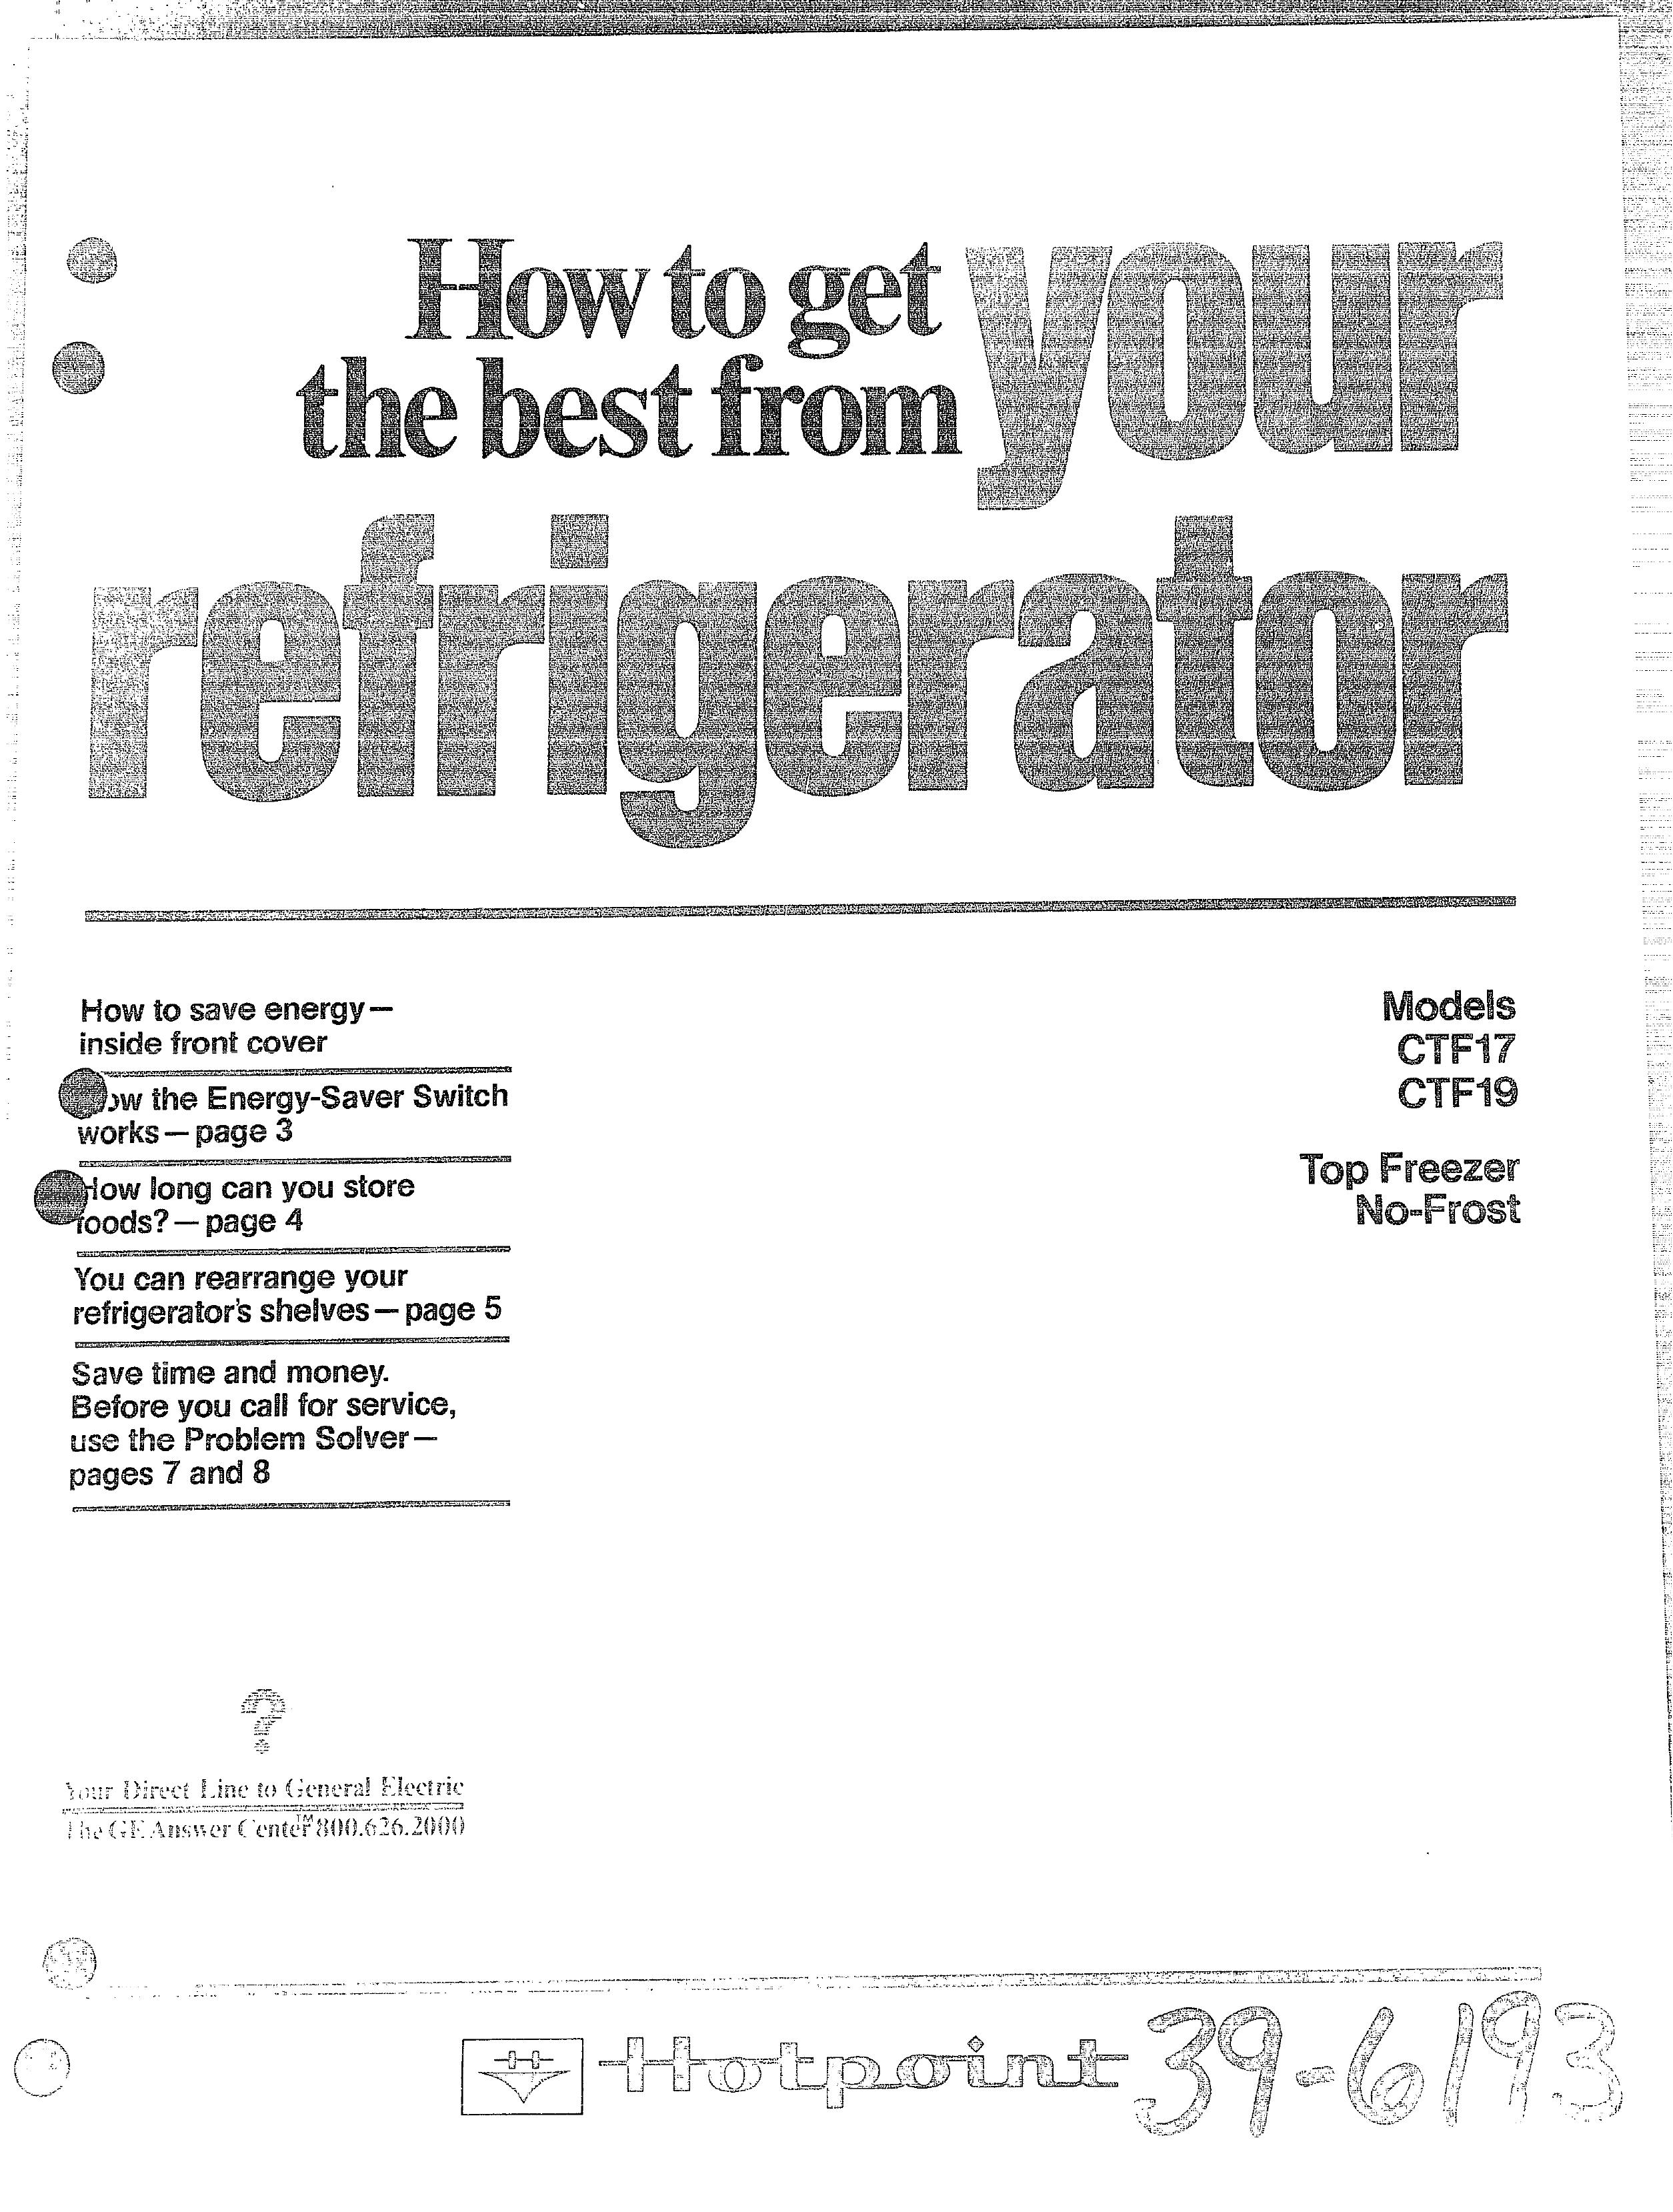 Hotpoint CTF17 Refrigerator User Manual